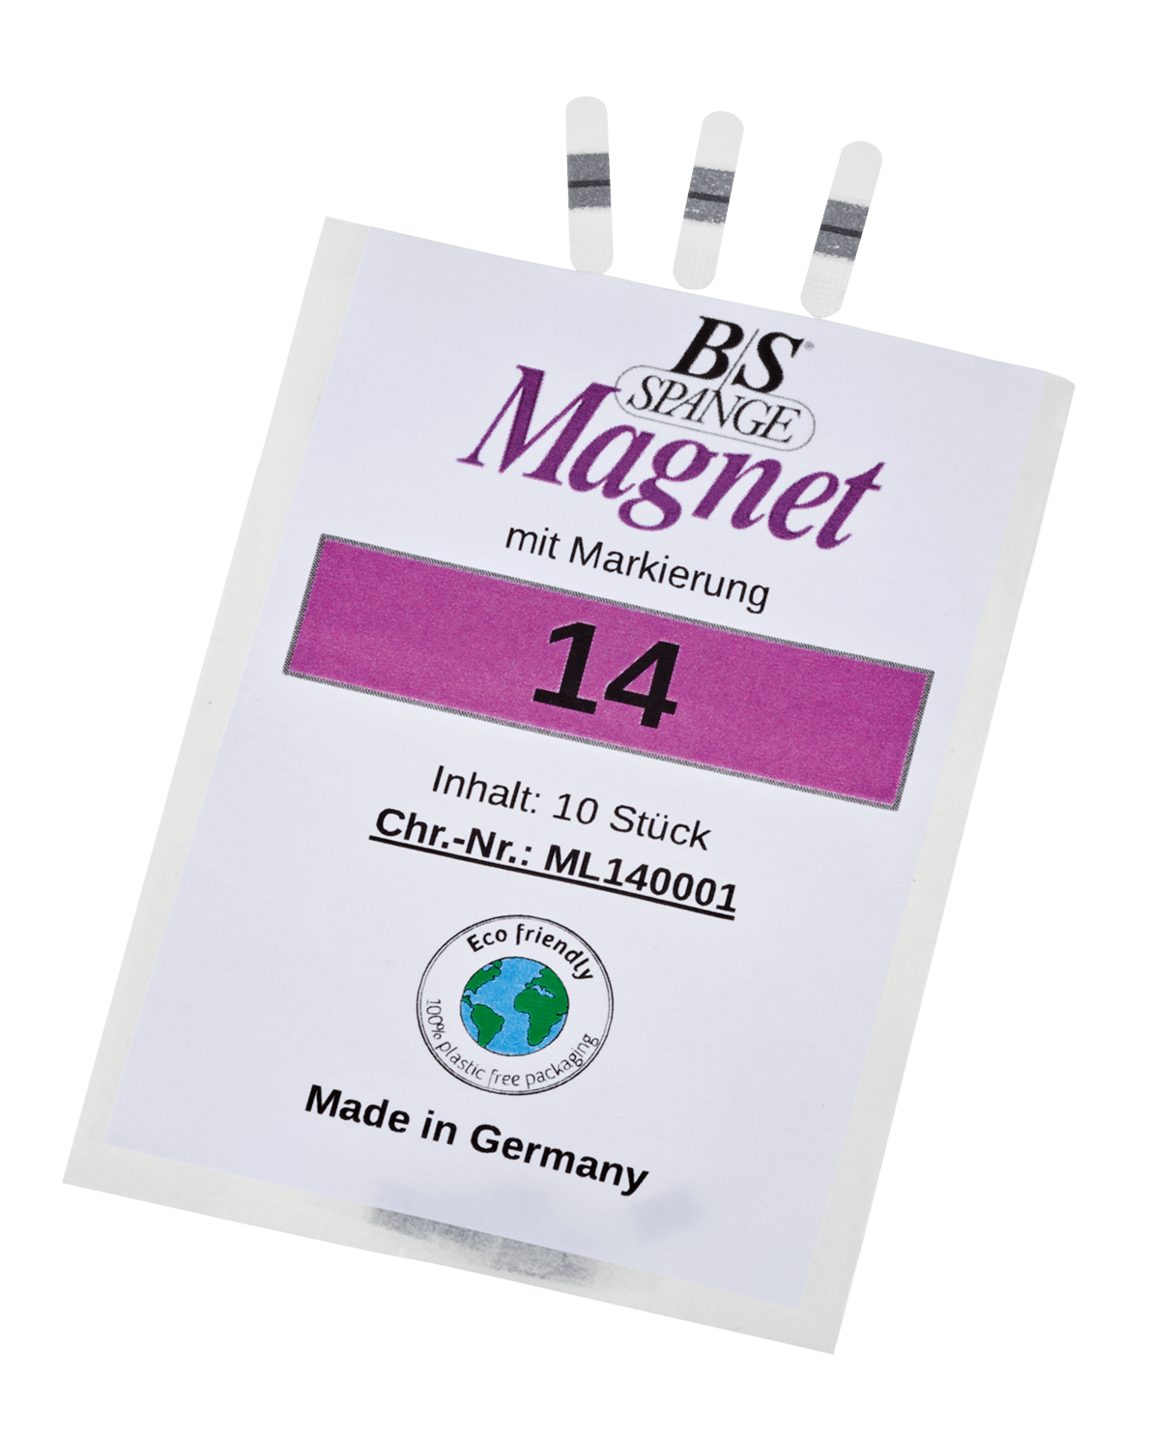 B/S - Magnet Spange mit Markierung